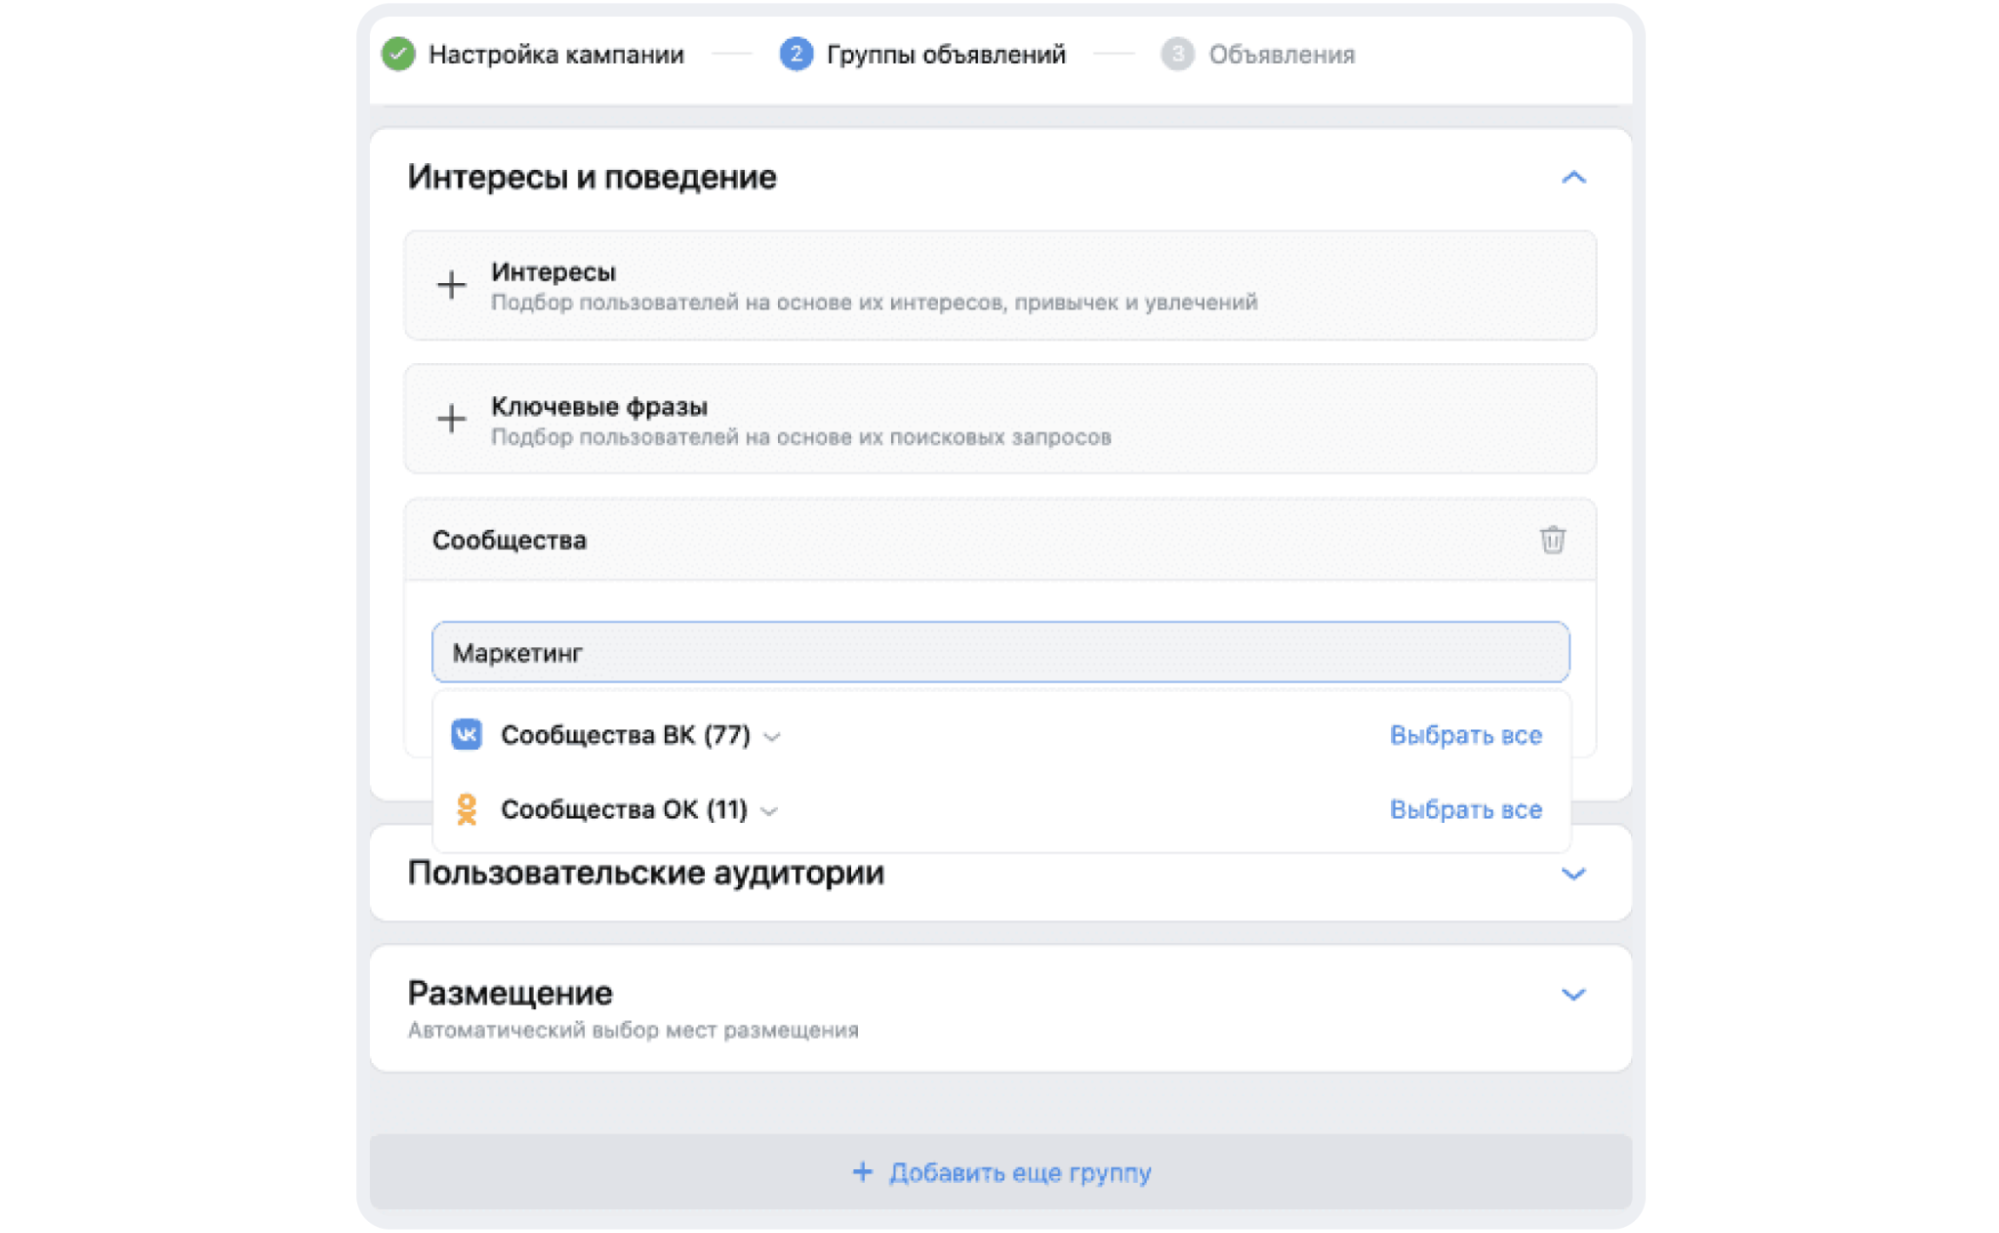 Таргетинг на подписчиков сообществ ВКонтакте и Одноклассников в VK Рекламе